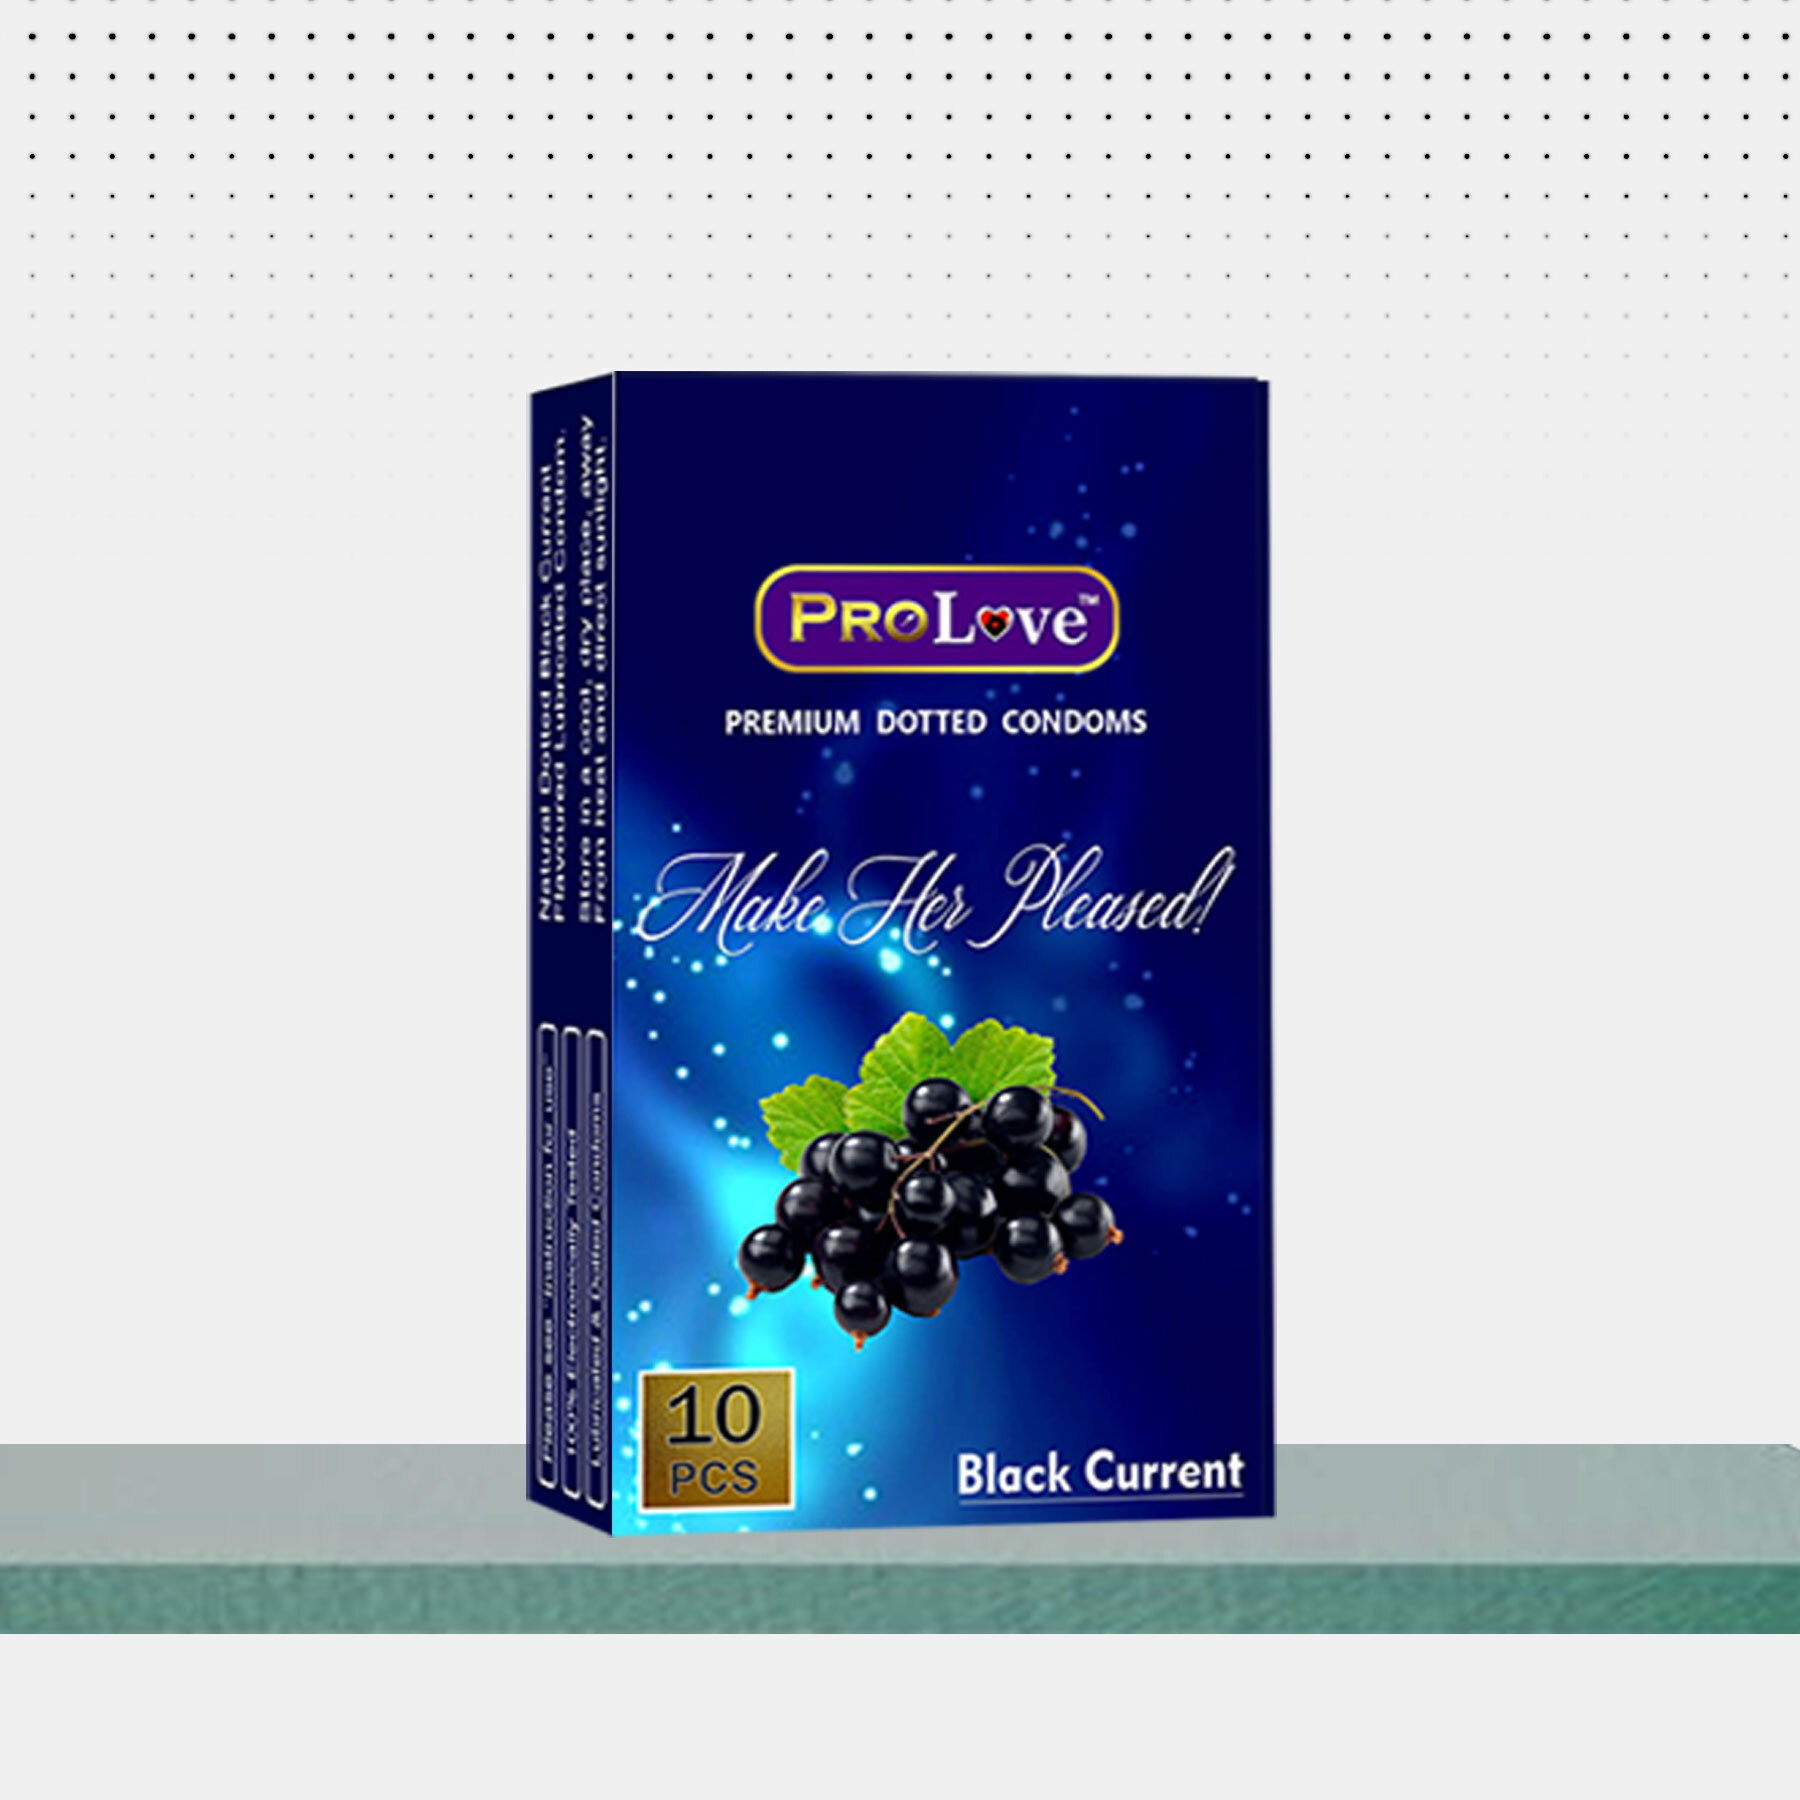 Dotted Condoms - Black Current Flavour - 10 Pcs